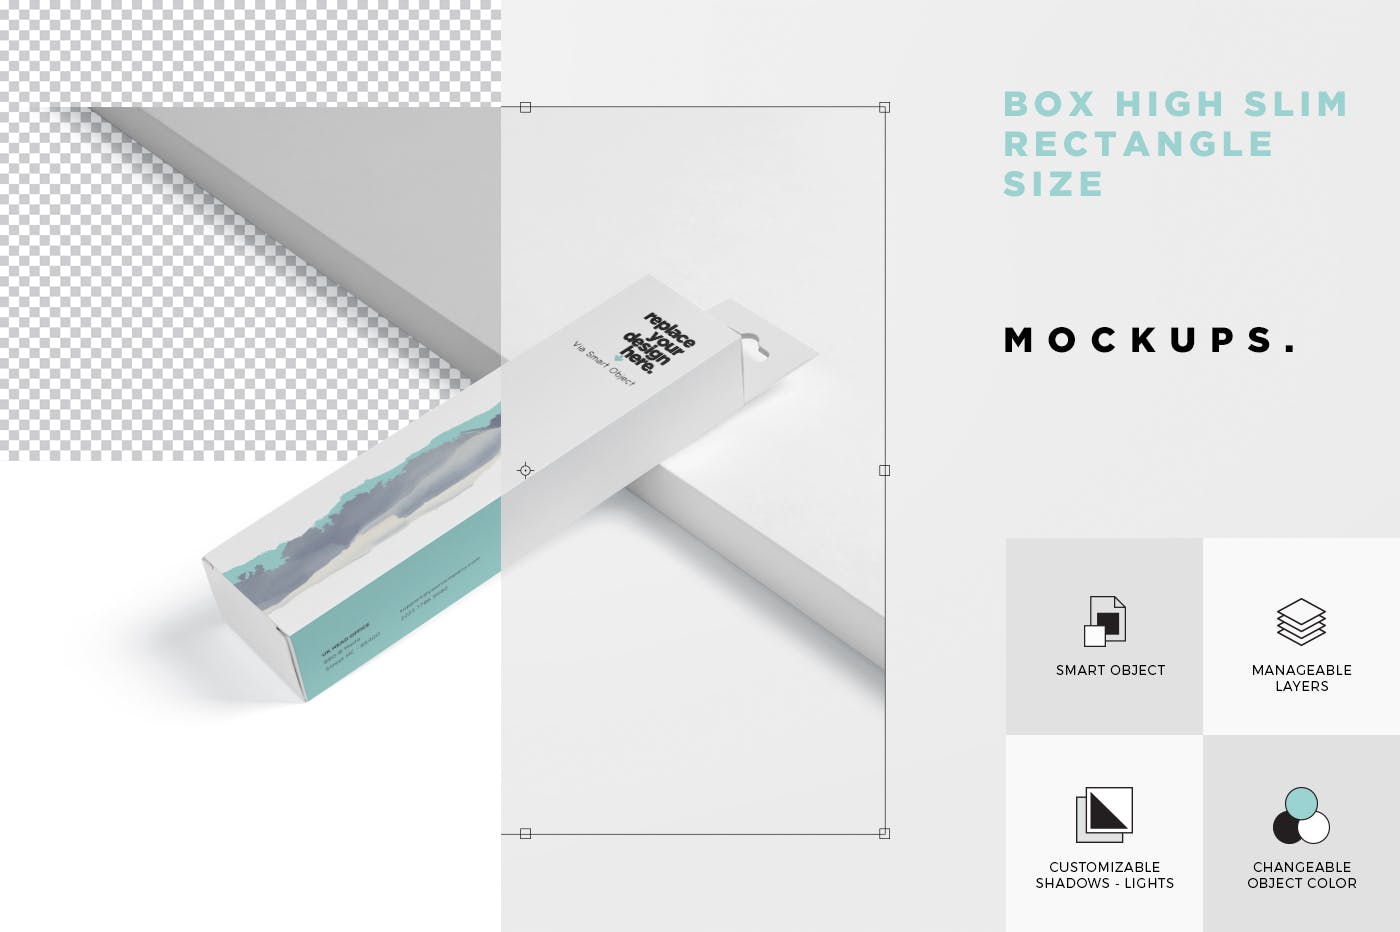 超薄矩形长条包装盒外观设计效果图样机 Box Mockup PSDs – High Slim Rectangle Size Hanger设计素材模板